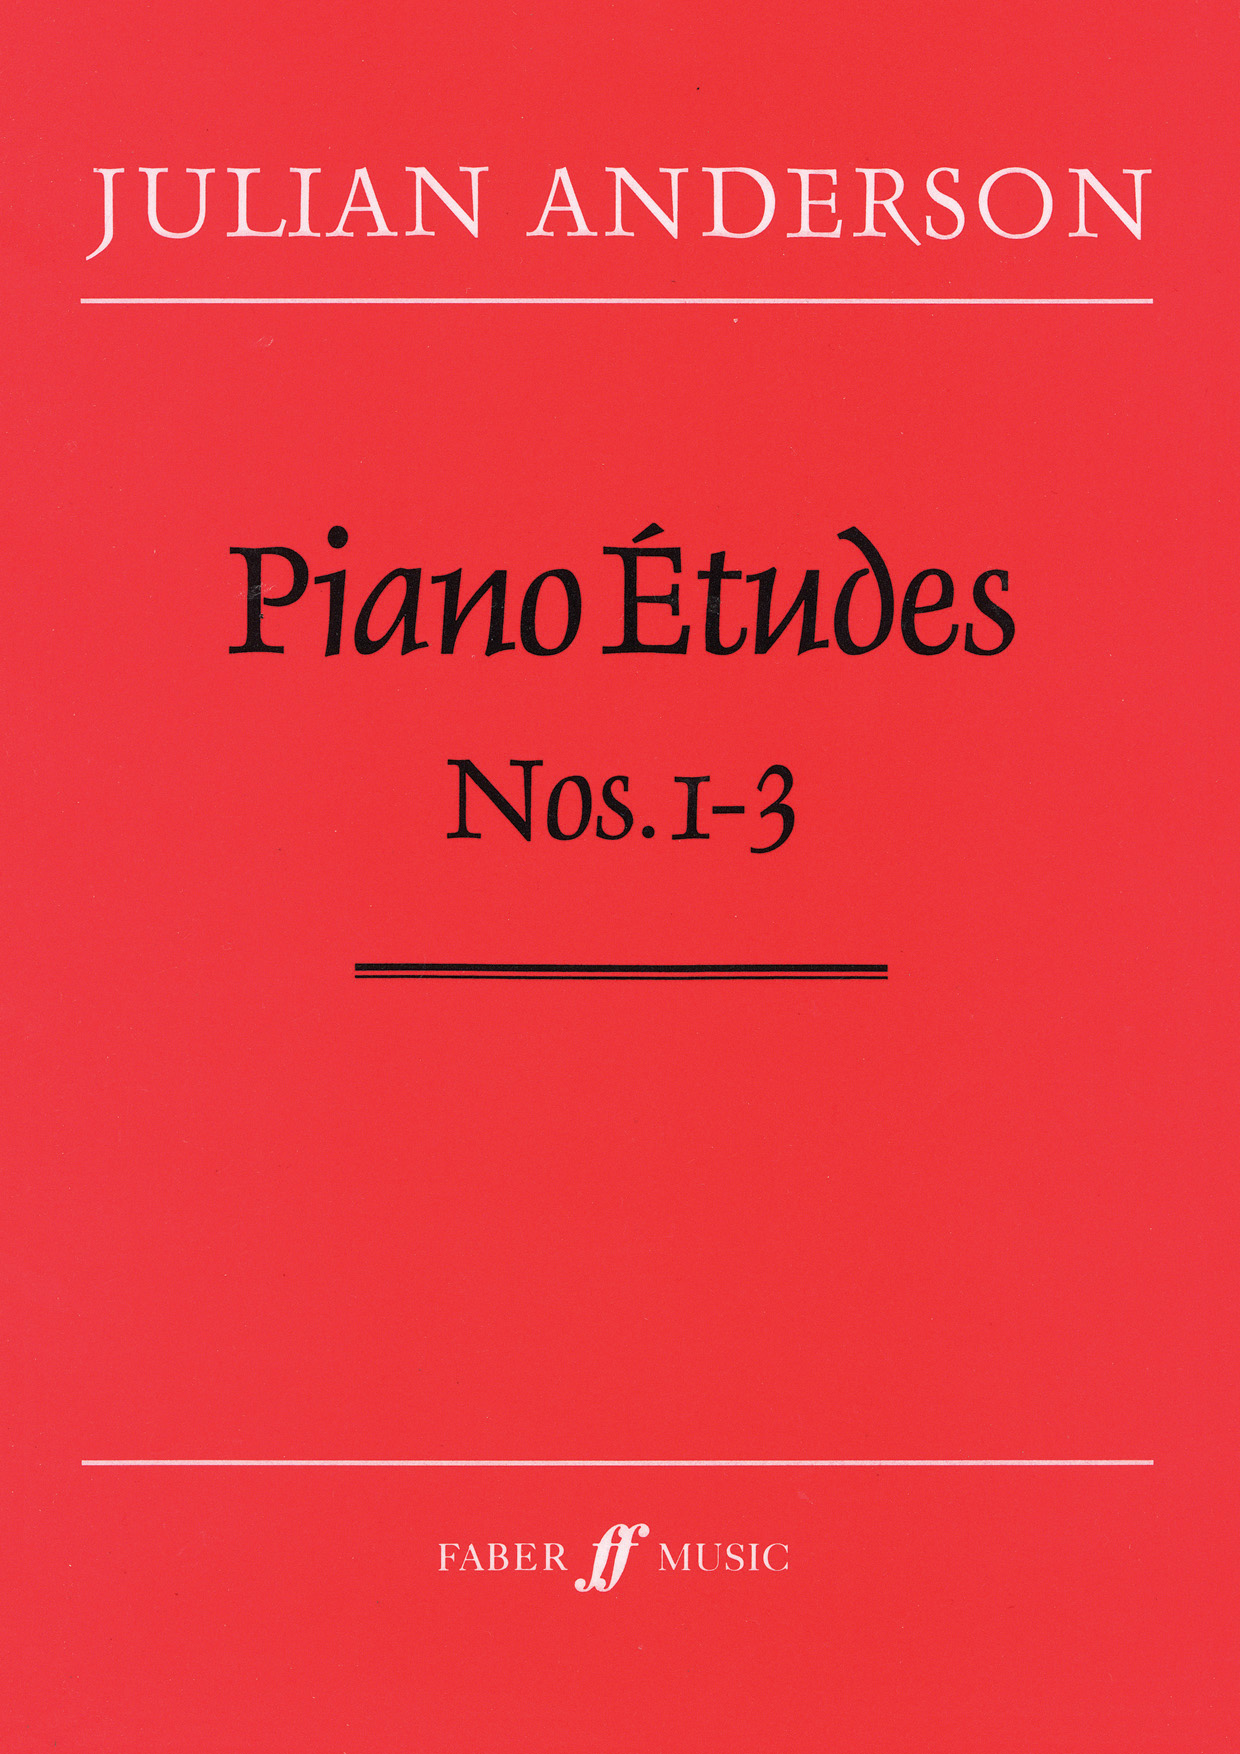 Julian Anderson: Piano Etudes Nos.1-3: Piano